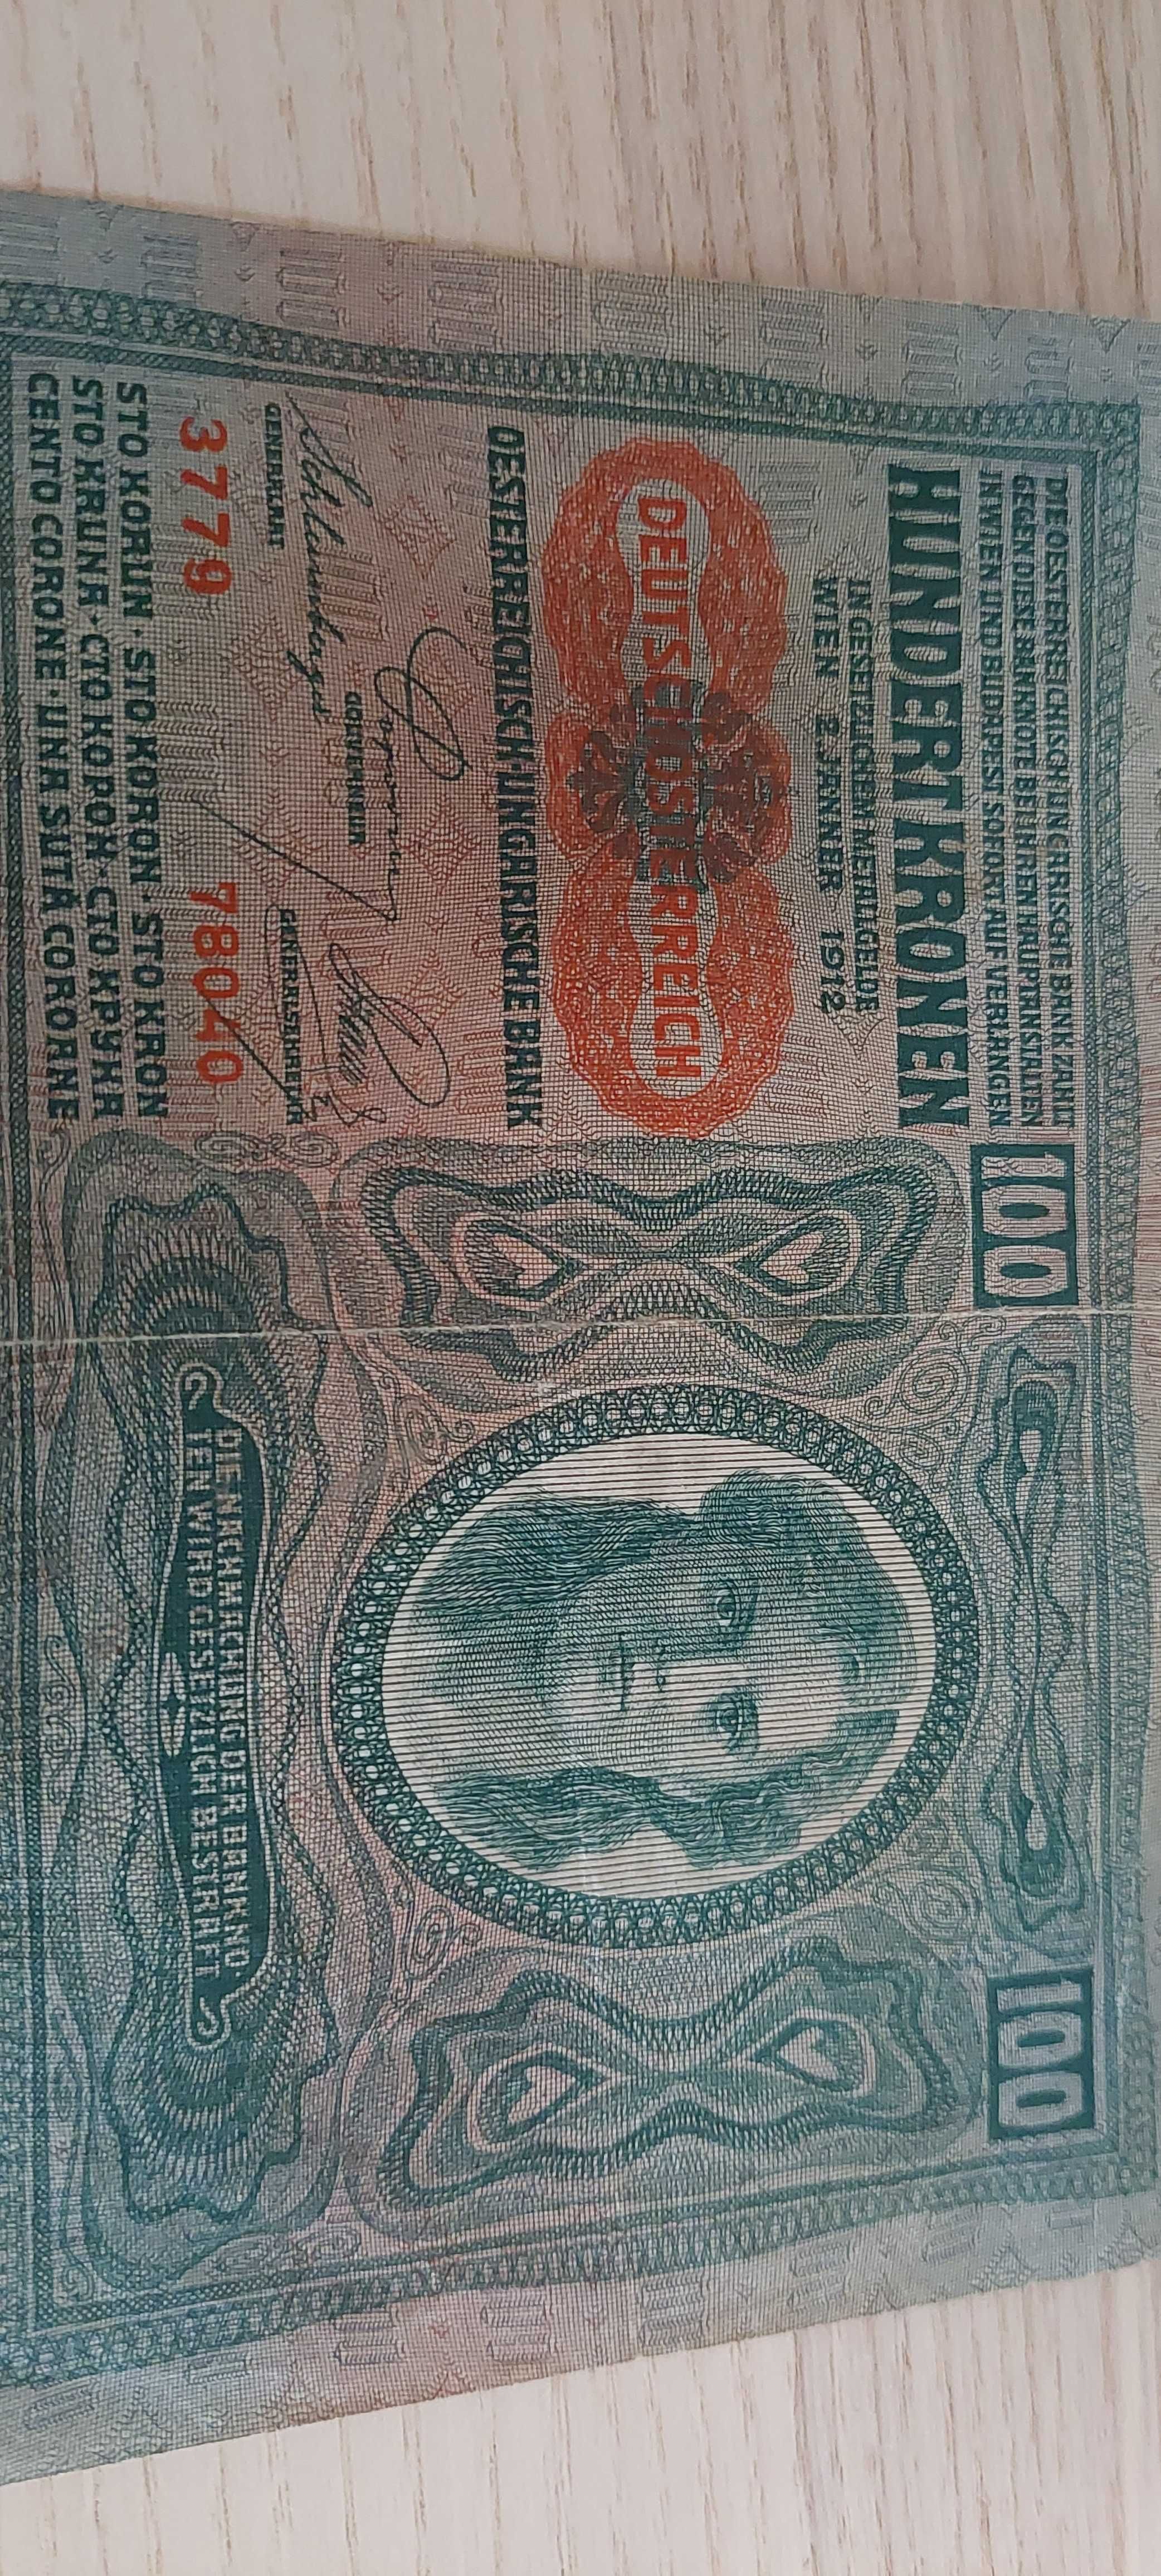 Banknot 100 koron austro węgierskich z 1912 roku